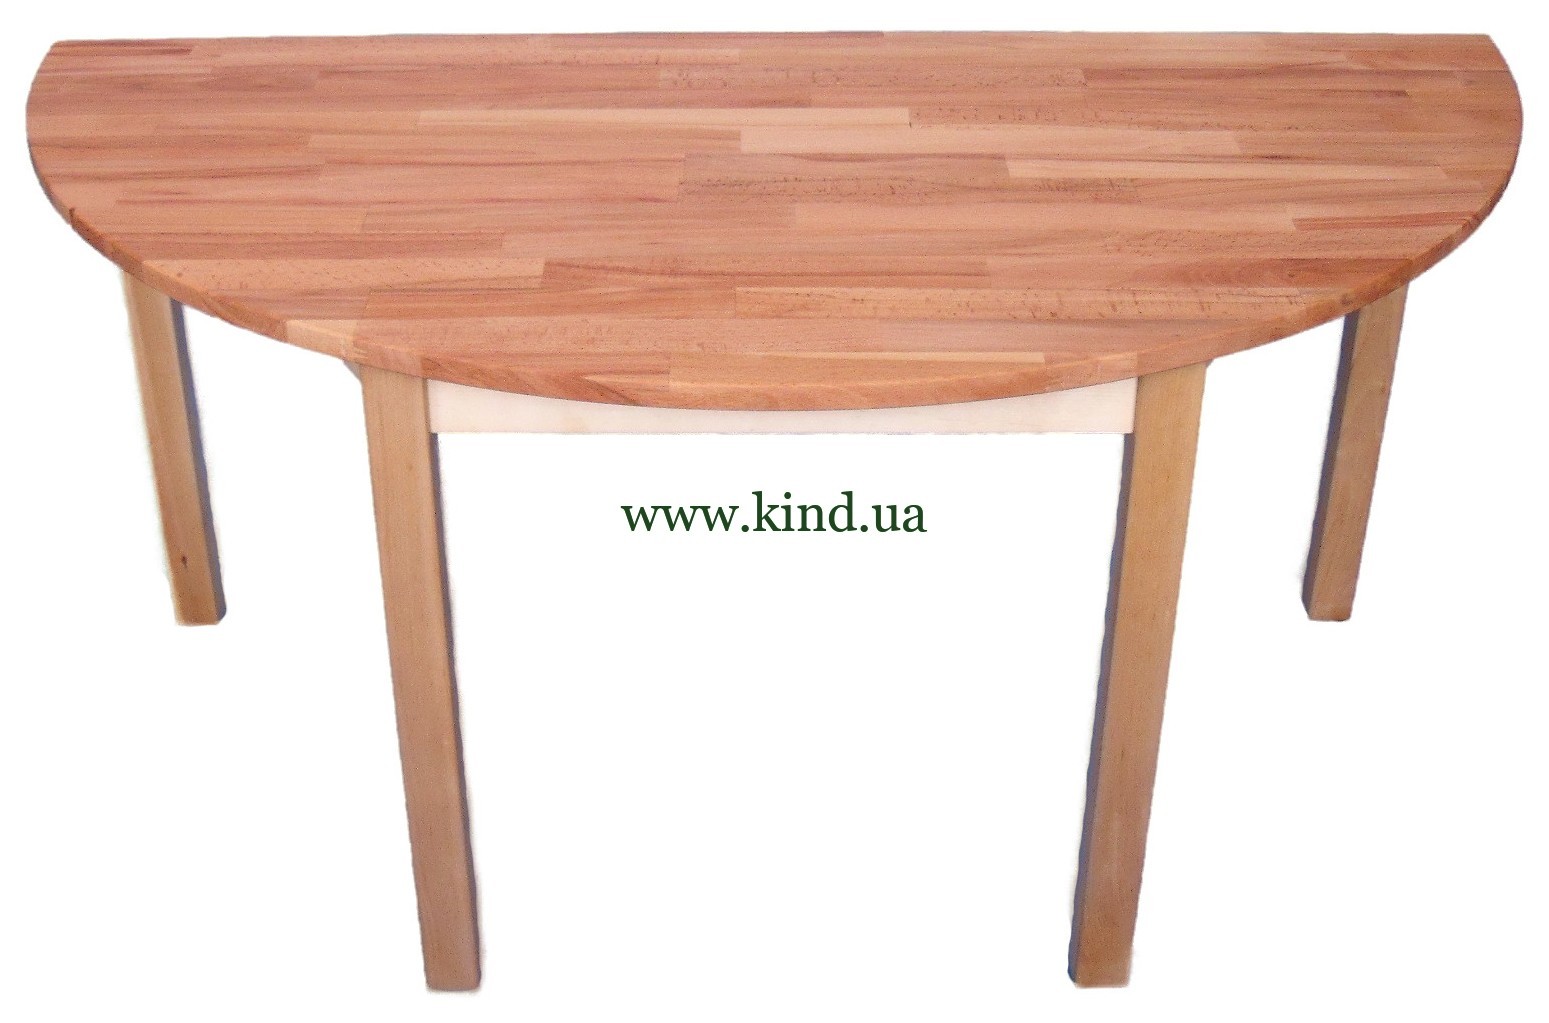 Стол полукруг. Стол обеденный полукруглый. Полукруглый стол. Стол деревянный полукруглый.